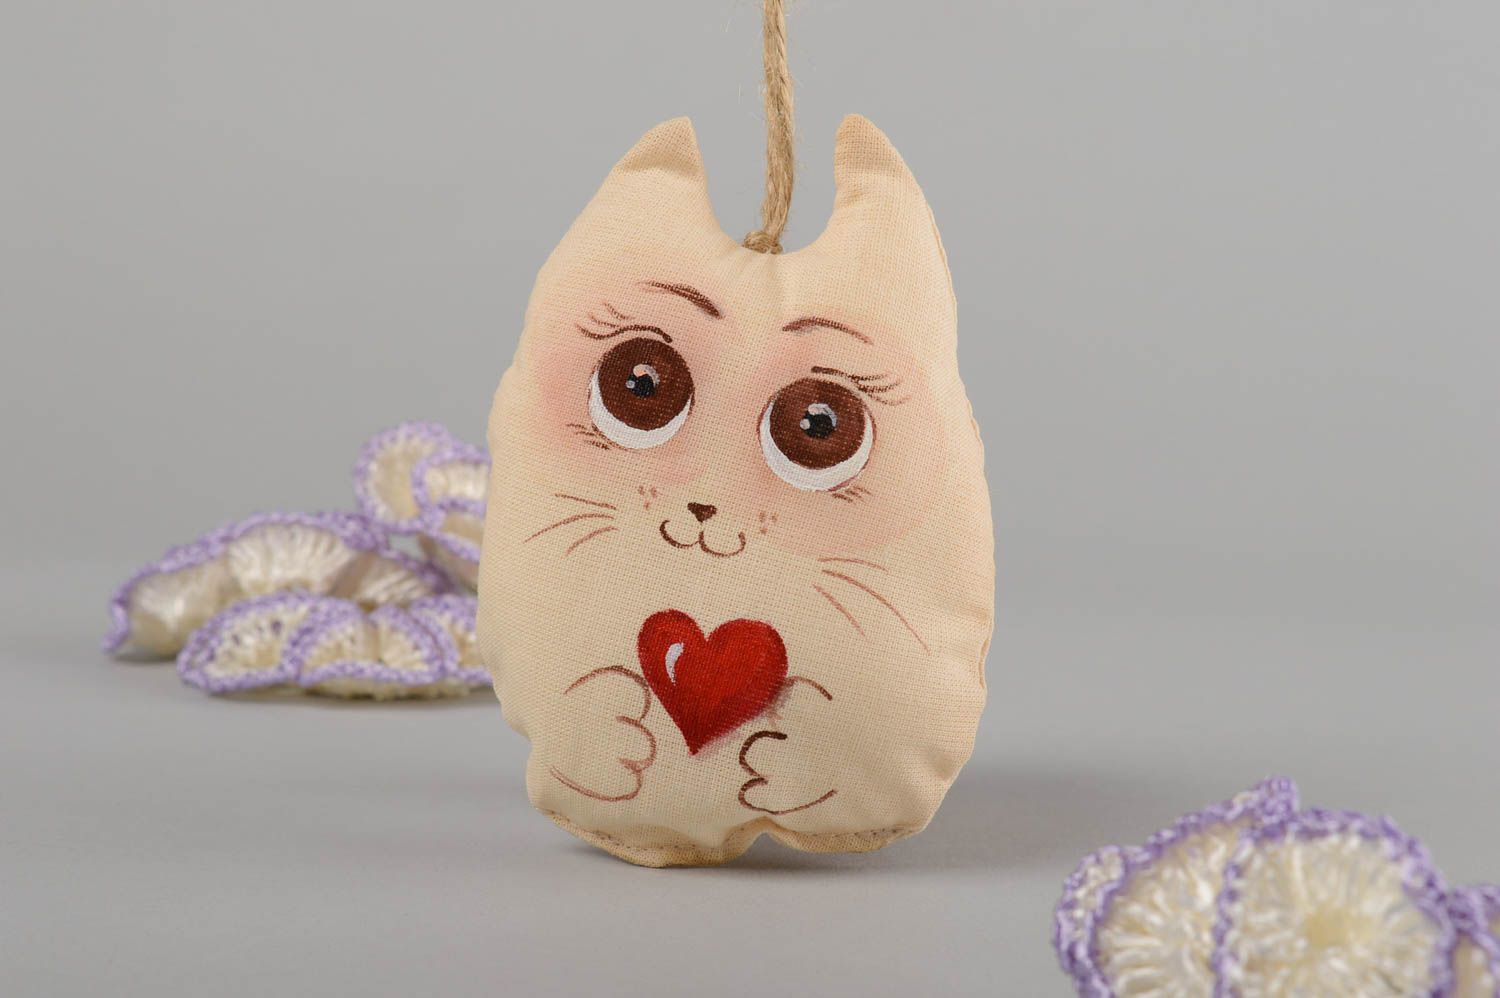 Textil Spielzeug handmade Kuscheltier Katze Deko Anhänger Designer Geschenk  foto 1